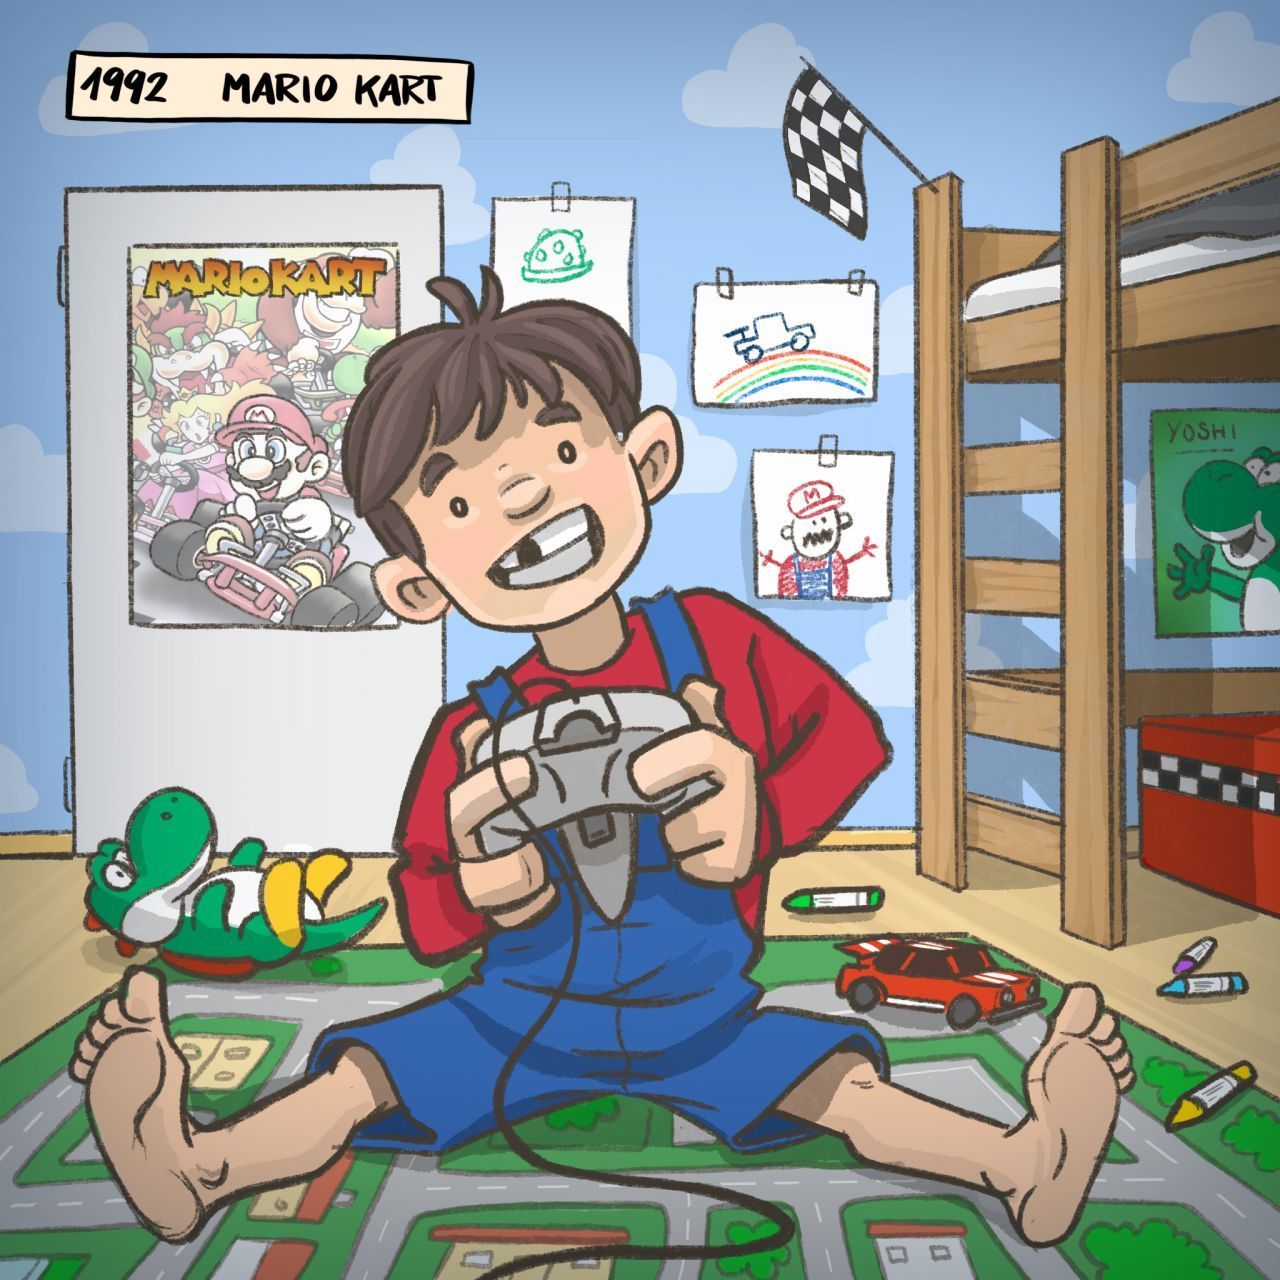 1992: Ebenfalls sehr früh schon kam "Mario Kart" auf den Markt. Inzwischen ist der Fun-Racer schon über 28 Jahre alt.